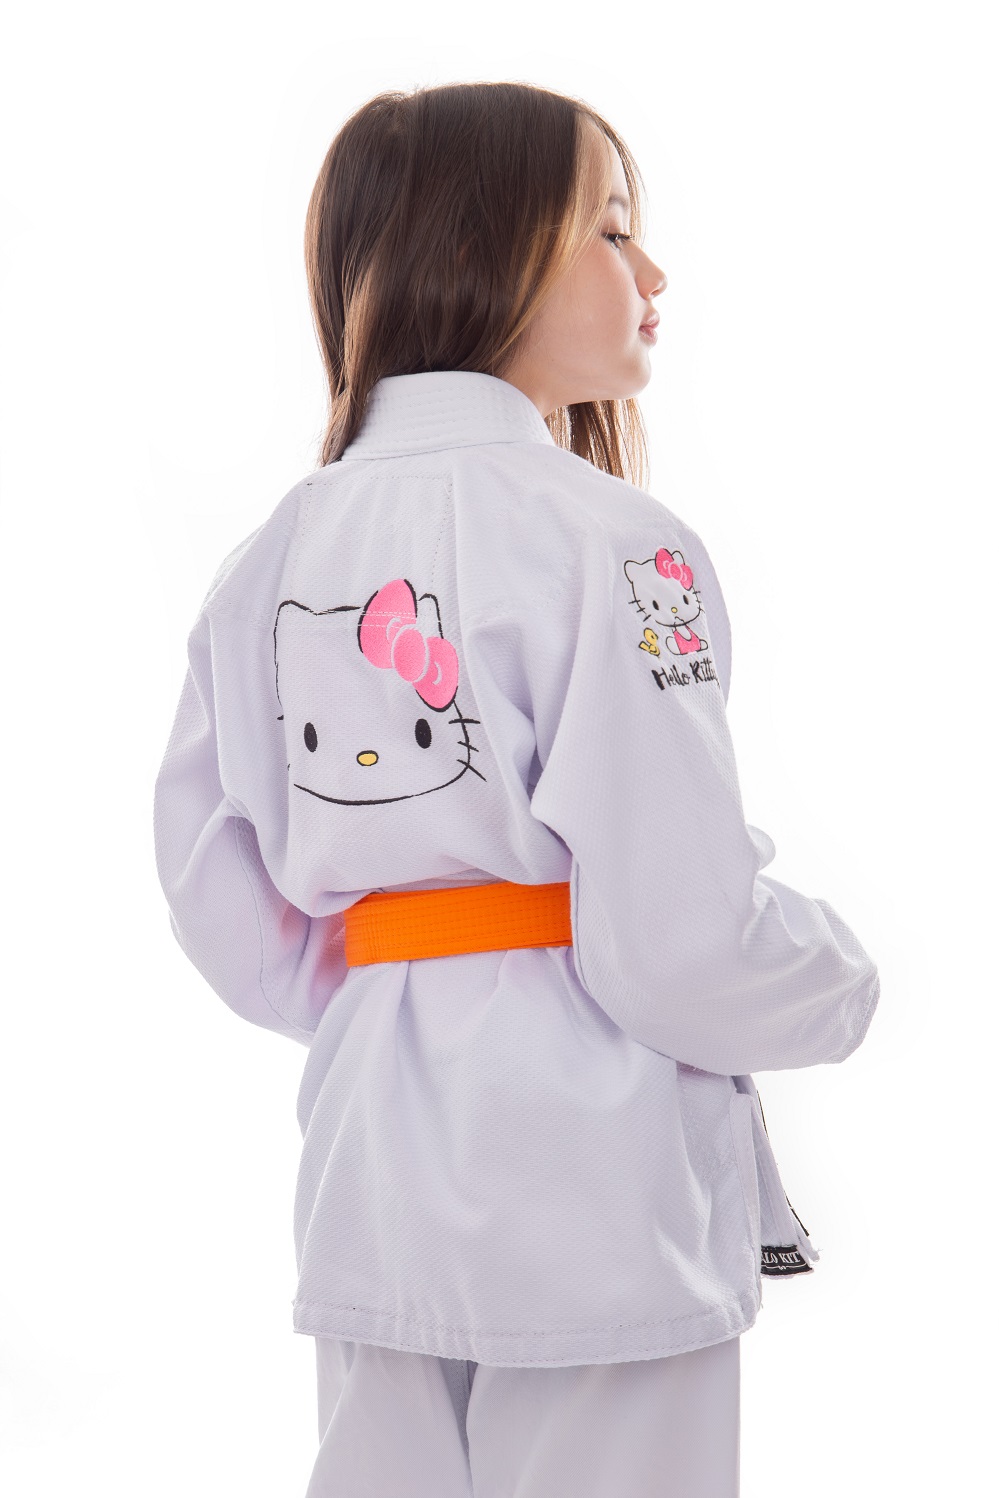 Kimono Inf. Hello Kitty Branco - Foto 2